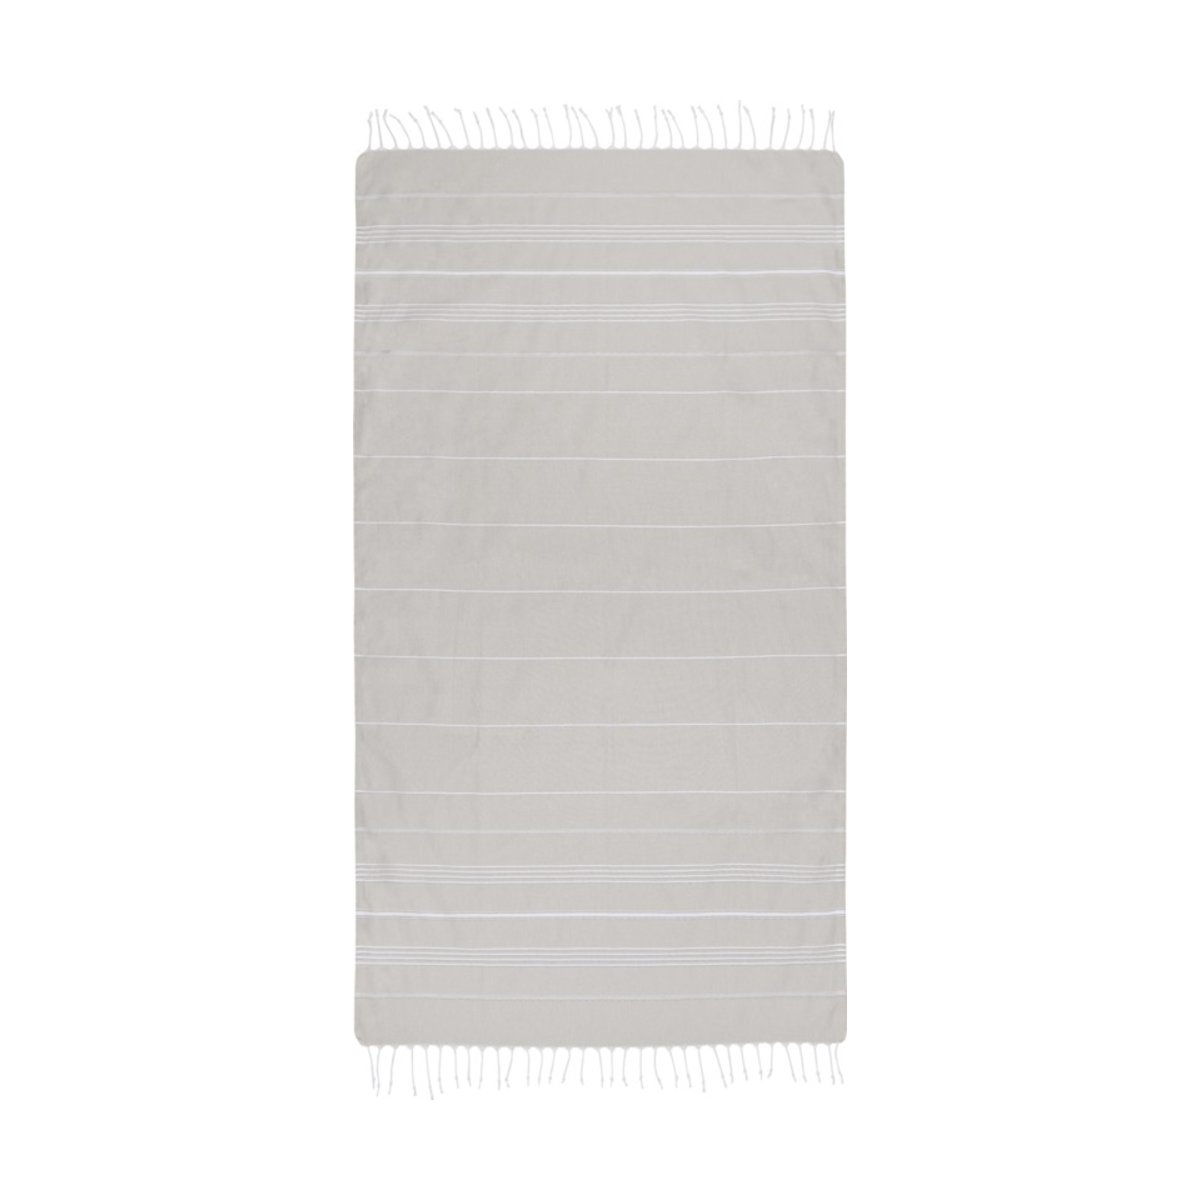 Anna bawełniany ręcznik hammam o gramaturze 150 g/m² i wymiarach 100 x 180 cm